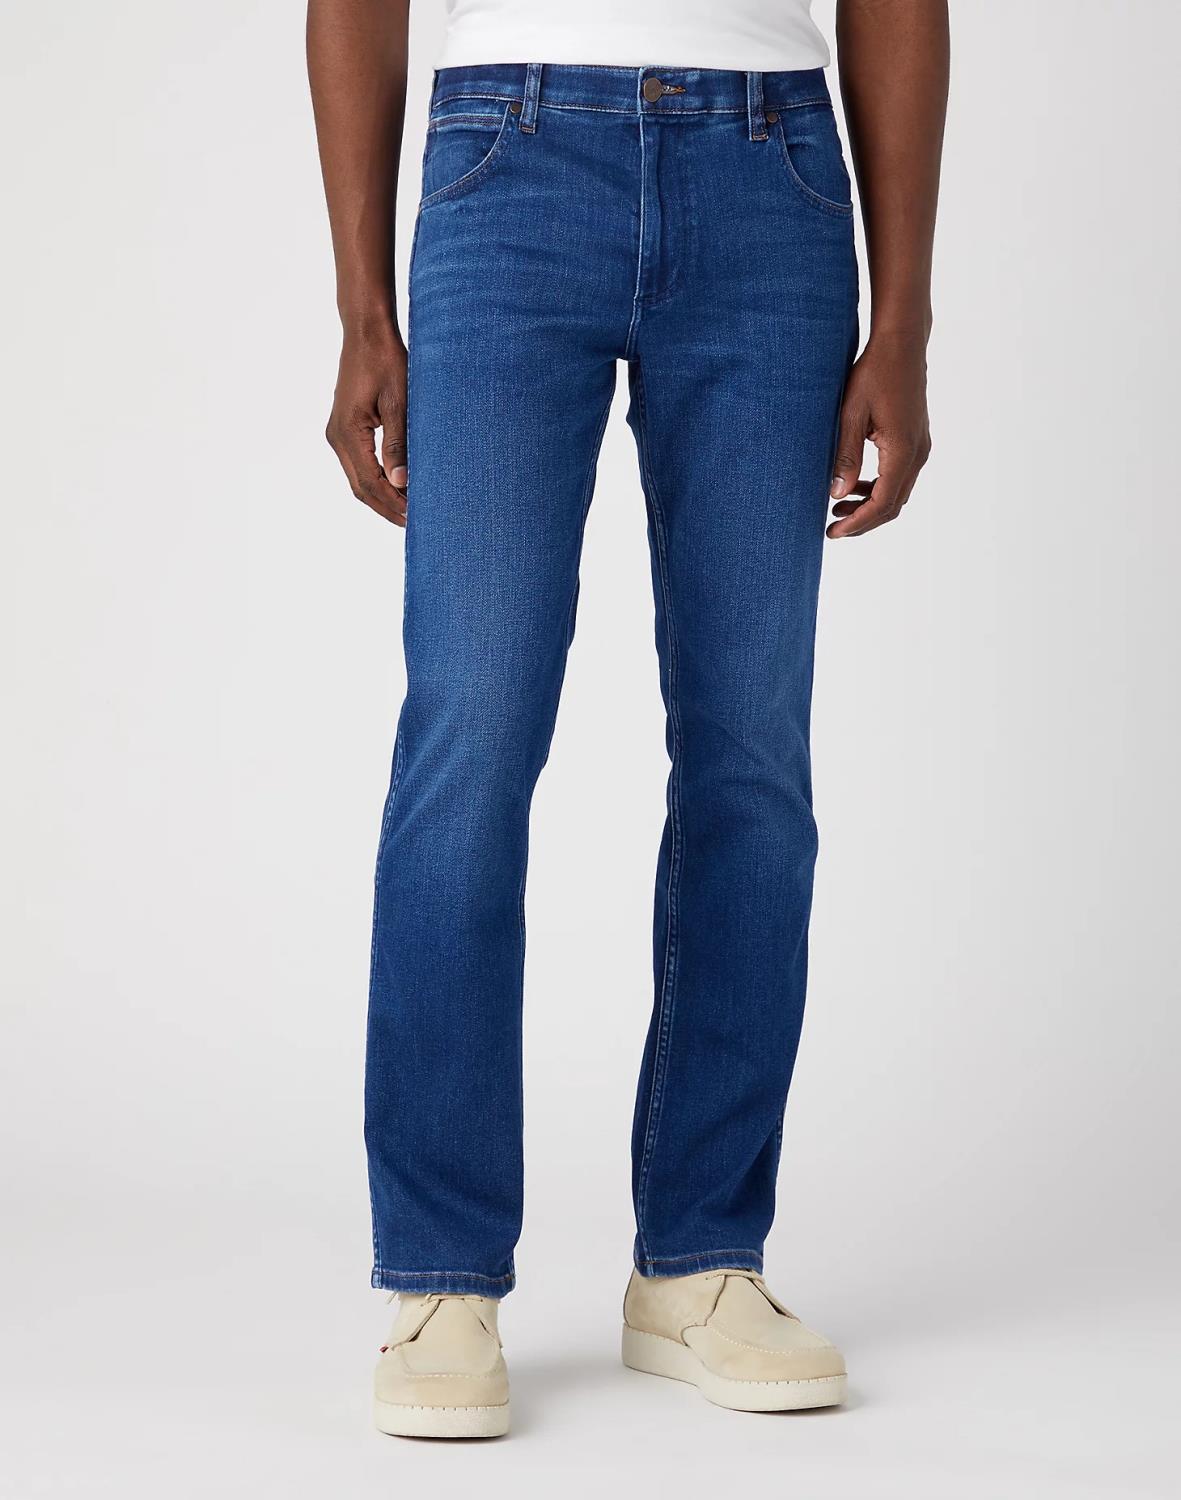 Wrangler Greensboro Jeans - Olympia